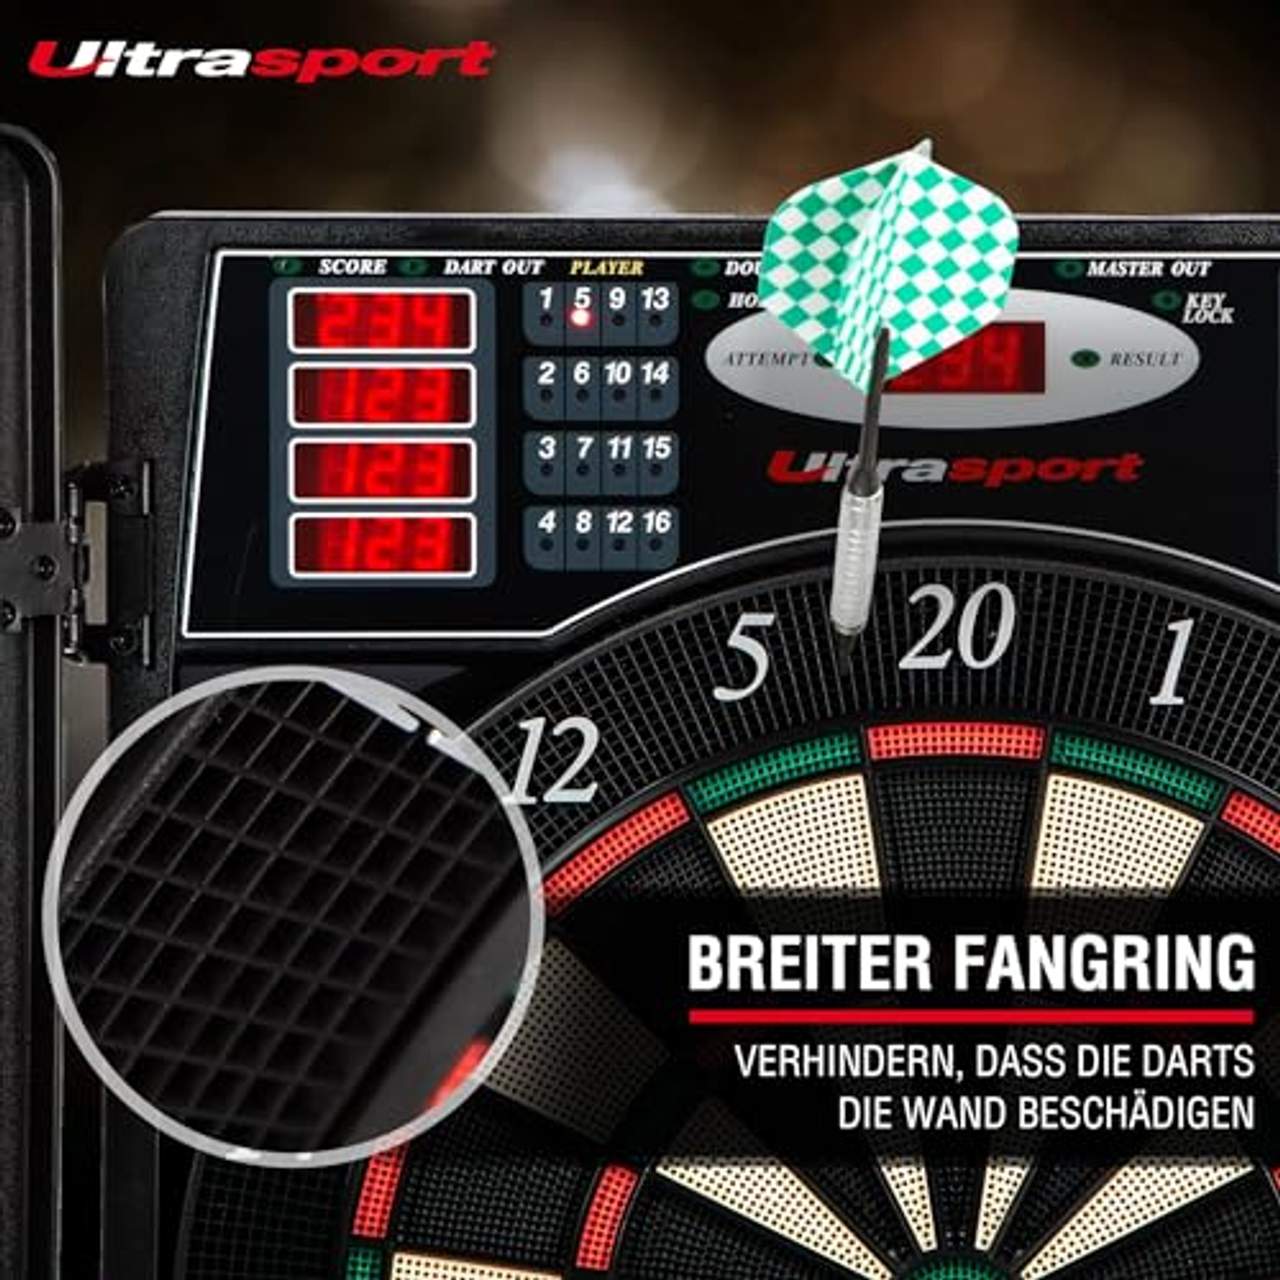 Ultrasport elektrisches Dartboard